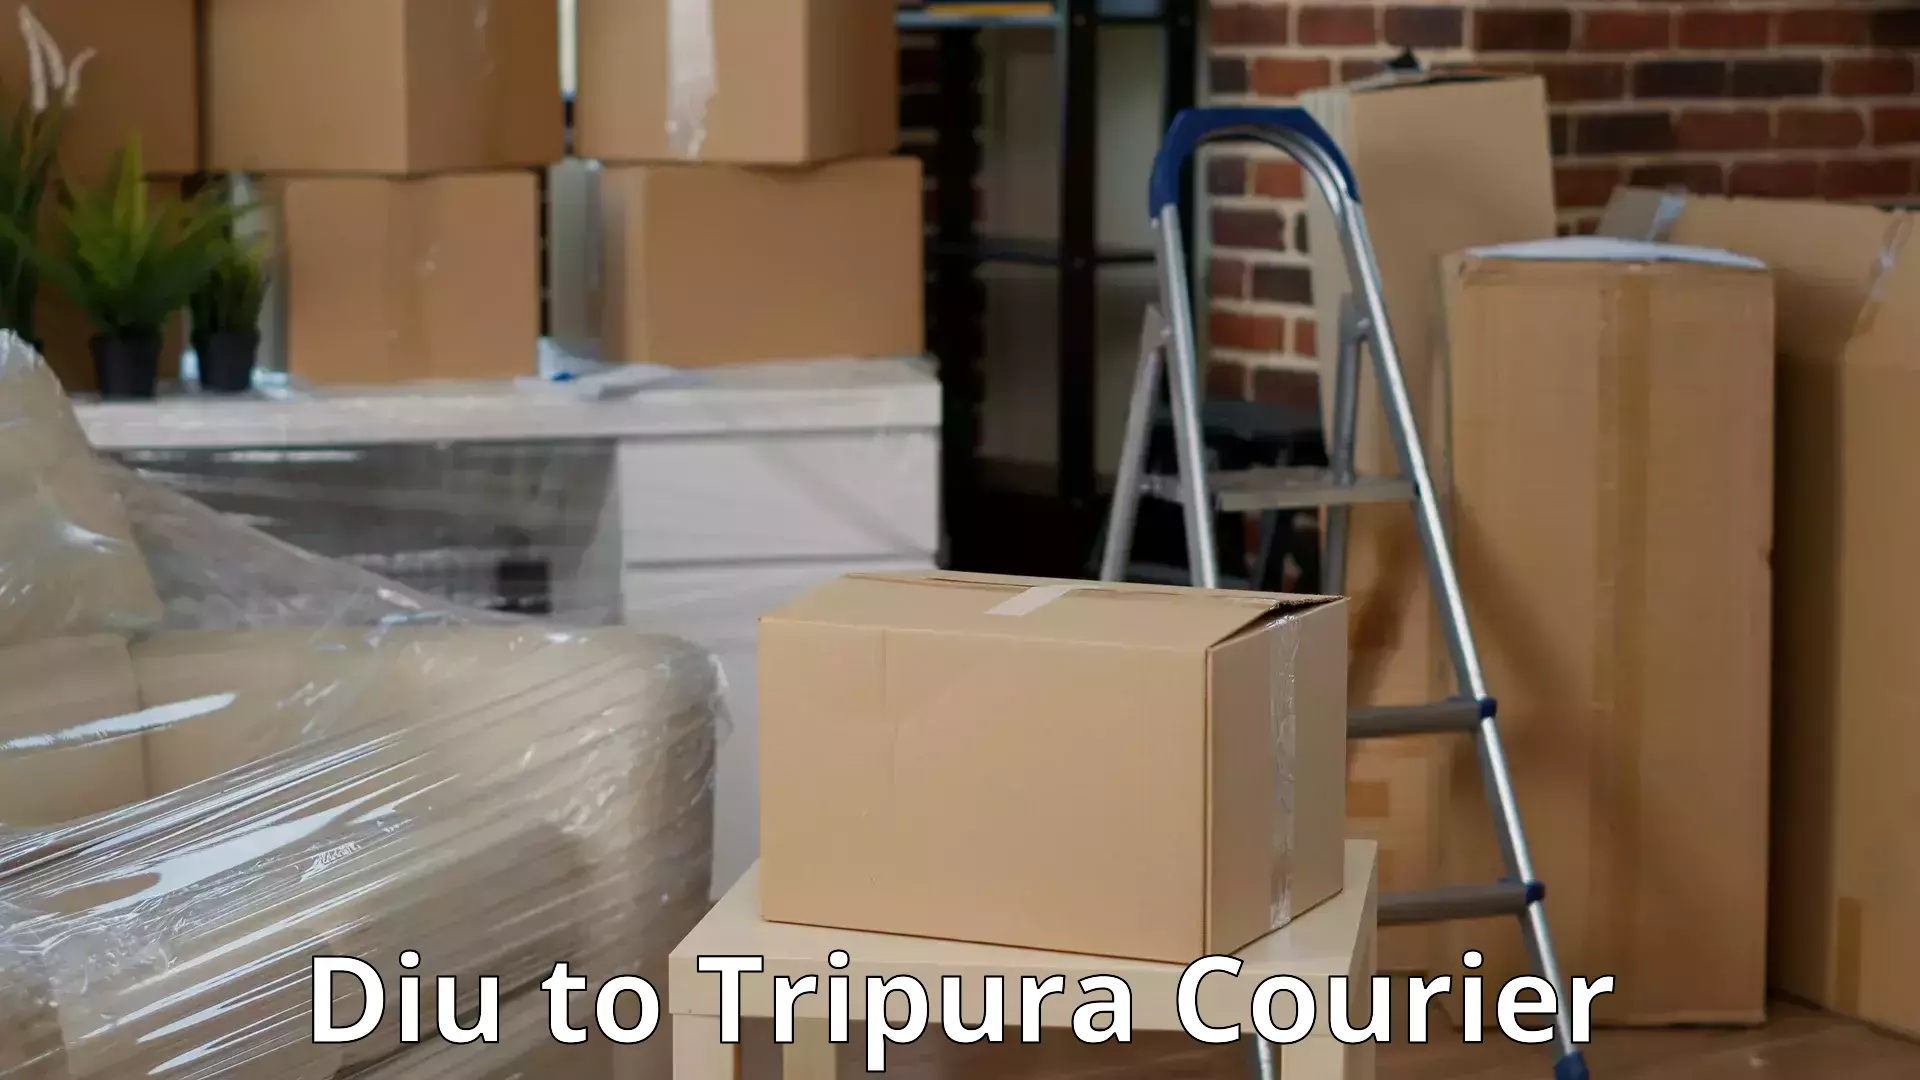 Quality furniture movers Diu to Tripura